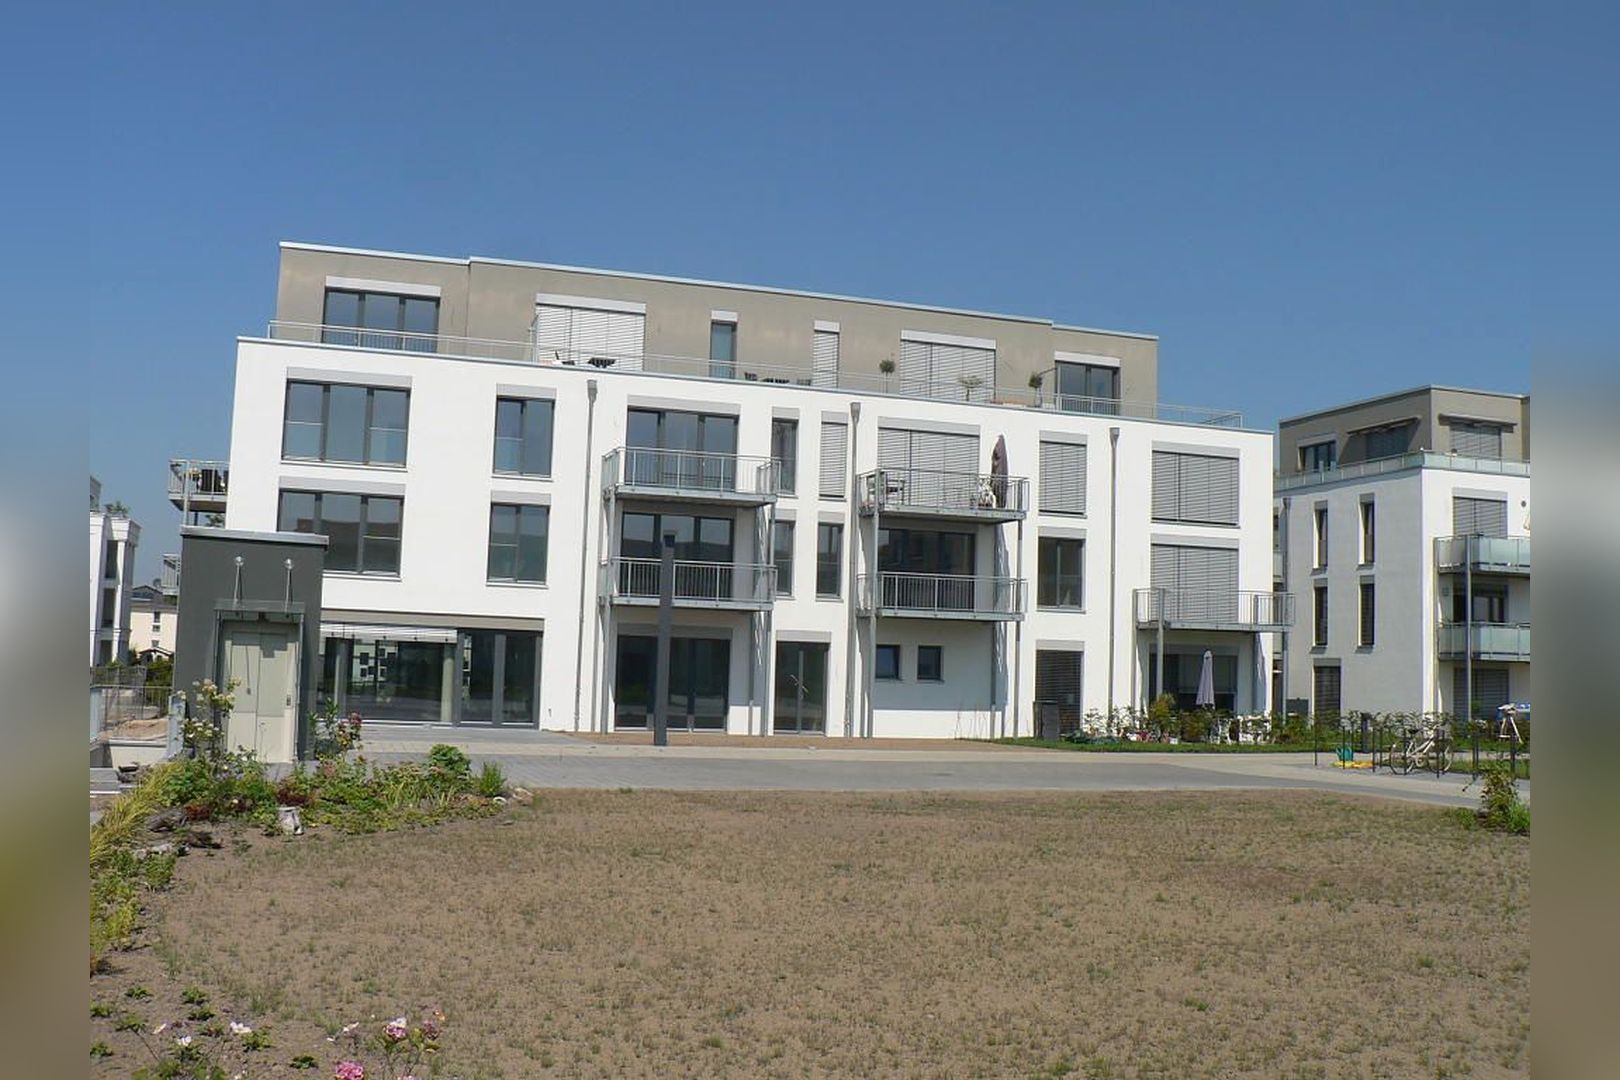 Immobilie Nr.Köln 003.5 - 5-Raum-Wohnung mit Wintergartenküche, 2 Bädern u. großem Balkon  - Bild main.jpg